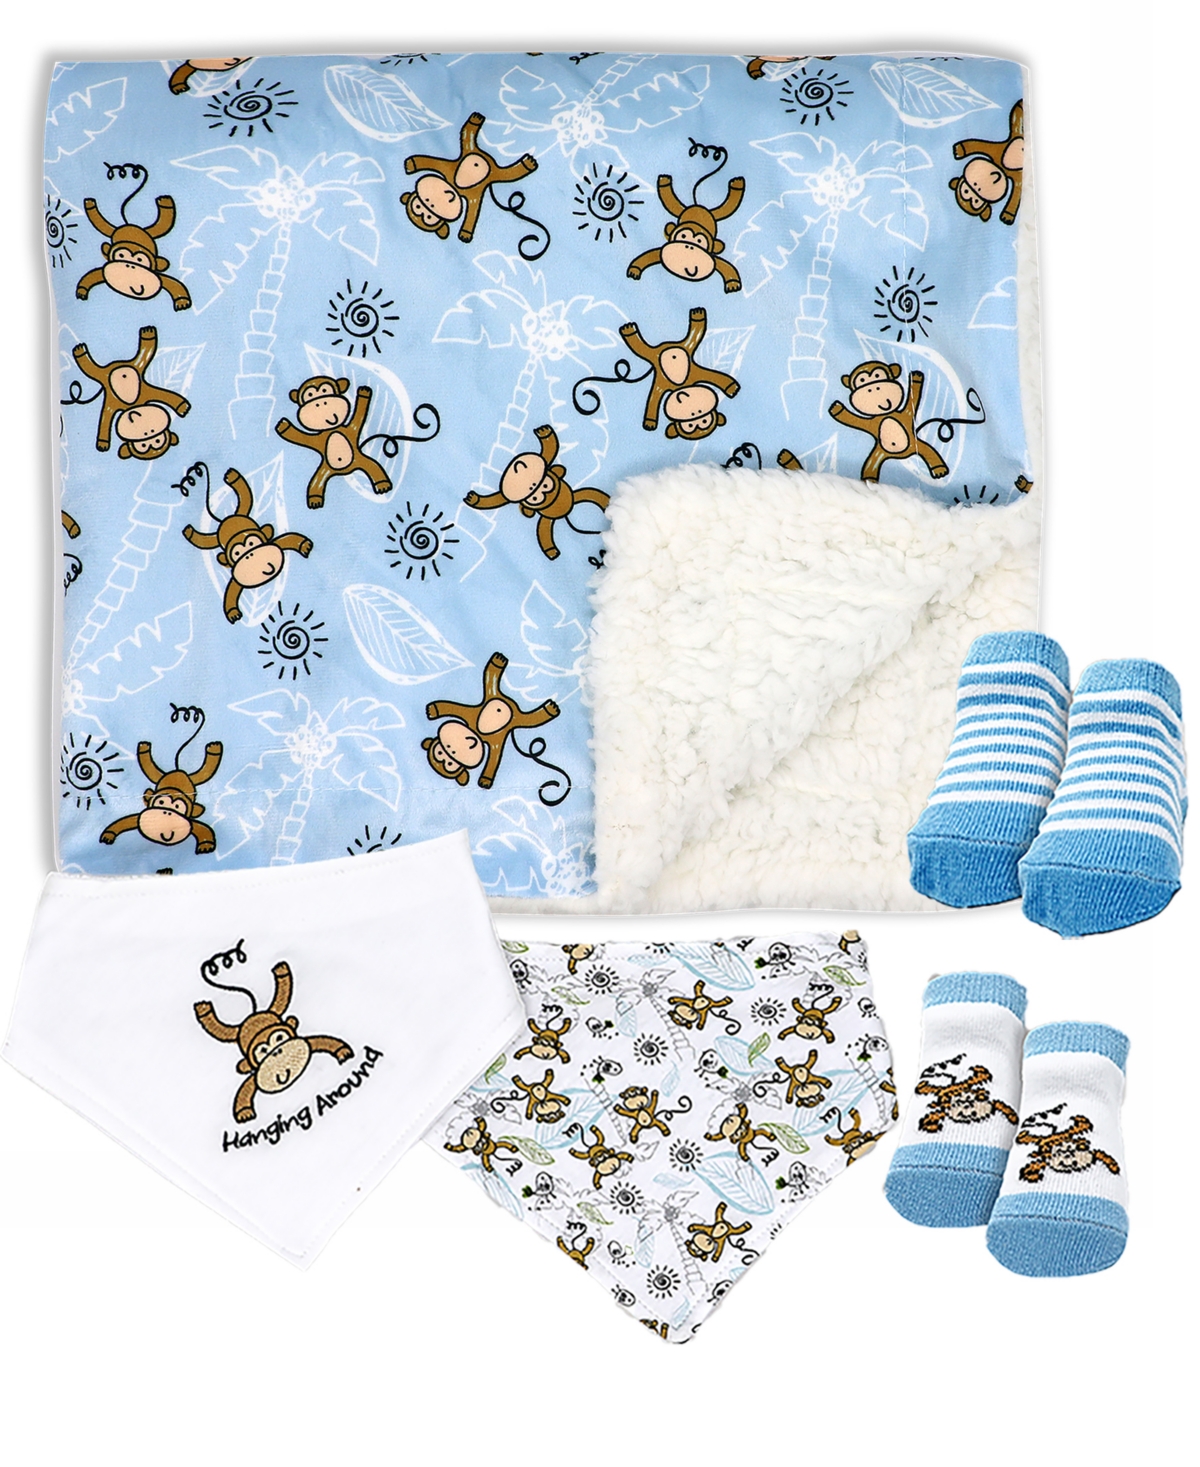 Baby Mode Baby Boys Minky Blanket, Bibs And Socks, 5 Piece Set In Light Blue Monkeys